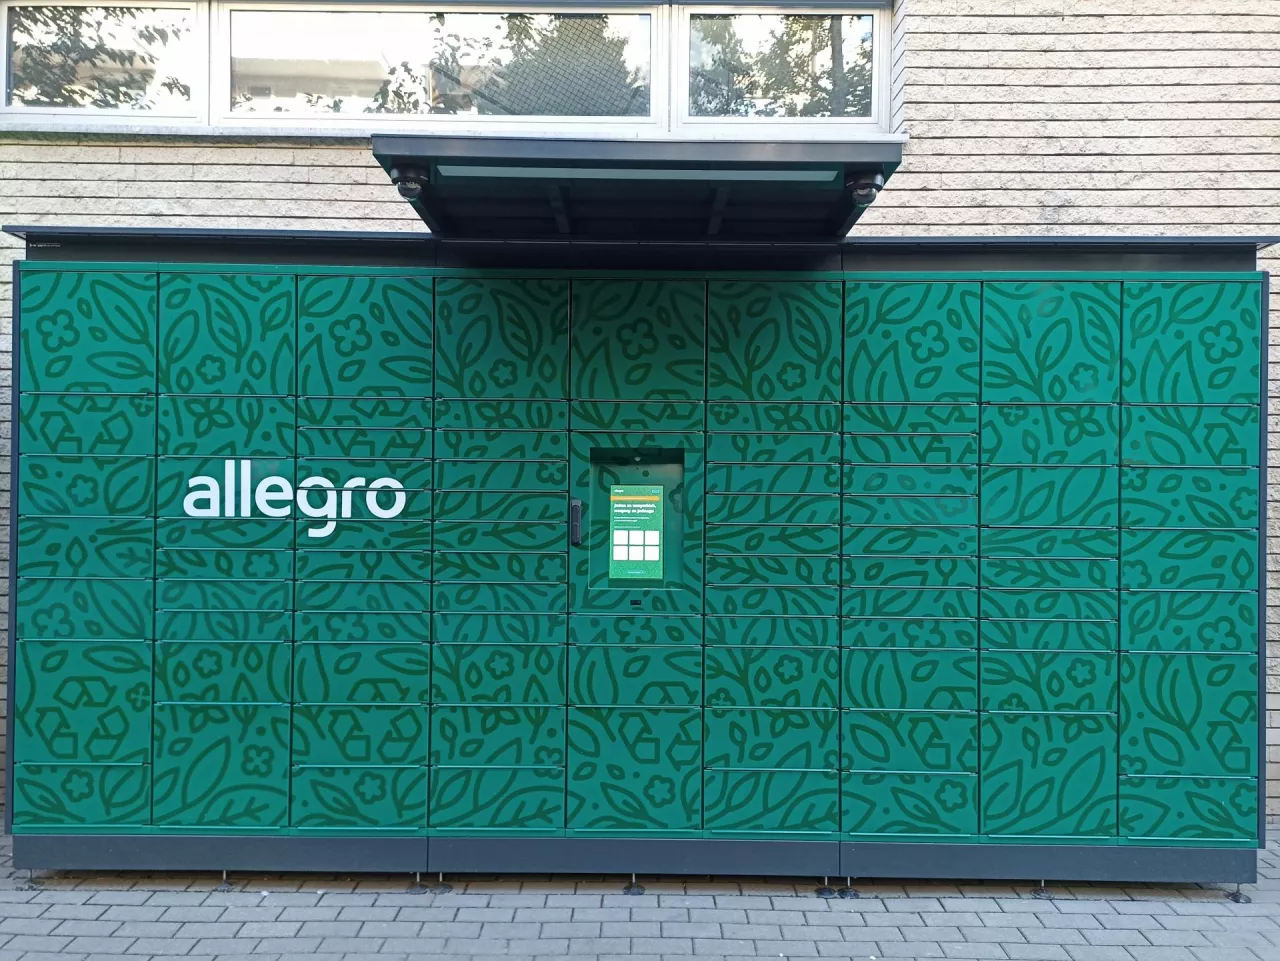 Automat paczkowy Allegro (zdjęcie ilustracyjne) (fot. wiadomoscihandlowe.pl/AK)